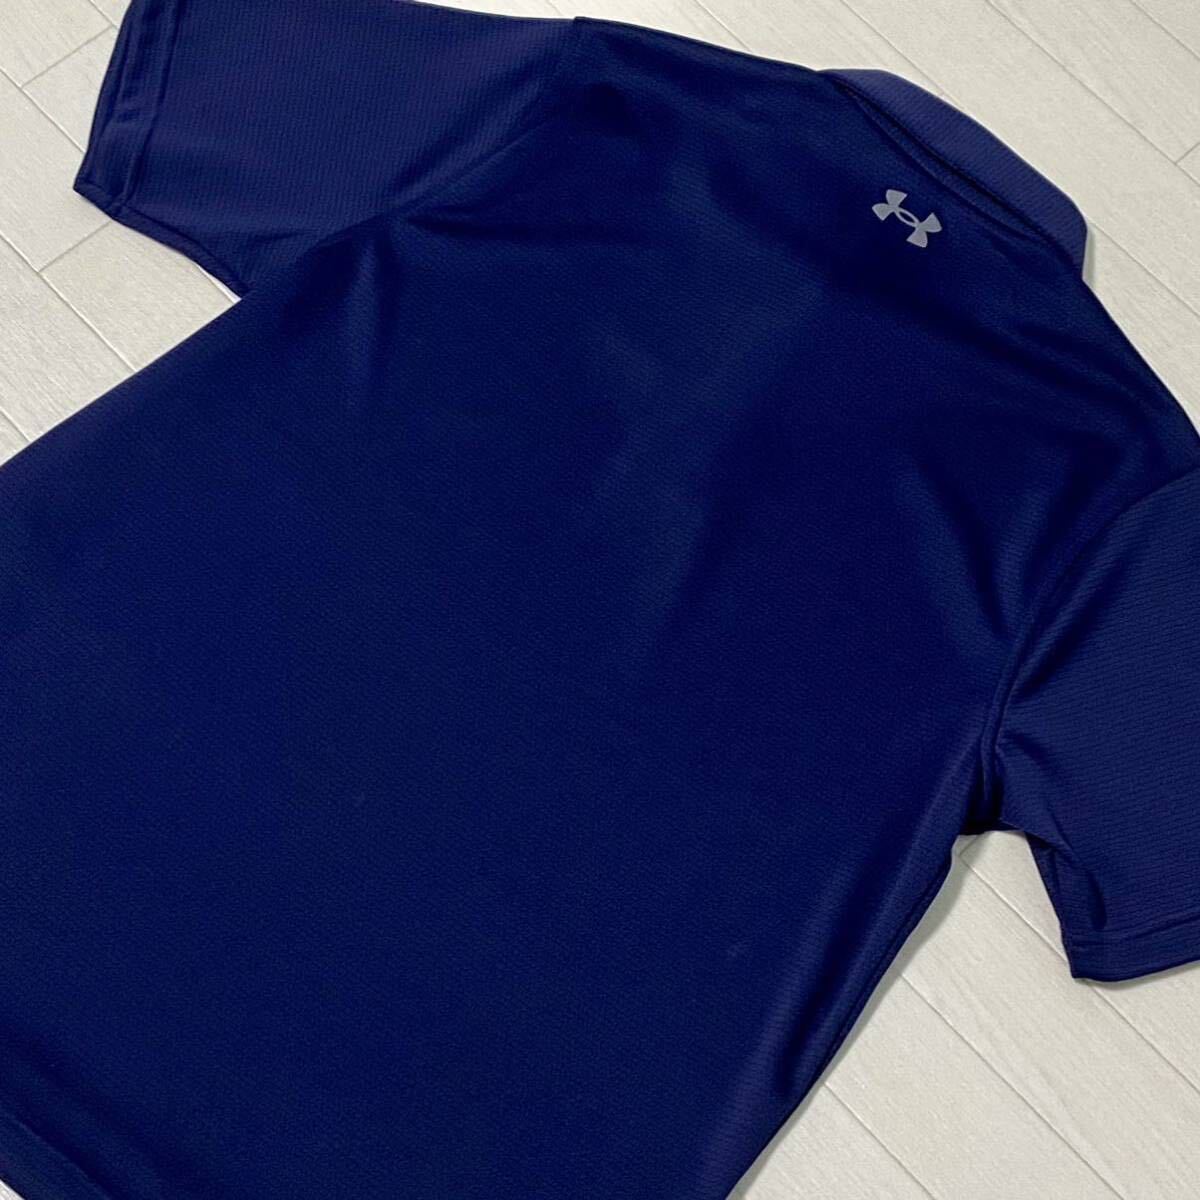  новый товар * Under Armor heatgear. пот скорость . рубашка-поло с коротким рукавом UA Tech Polo/ темно-синий / размер L(LG)/ стоимость доставки 185 иен 